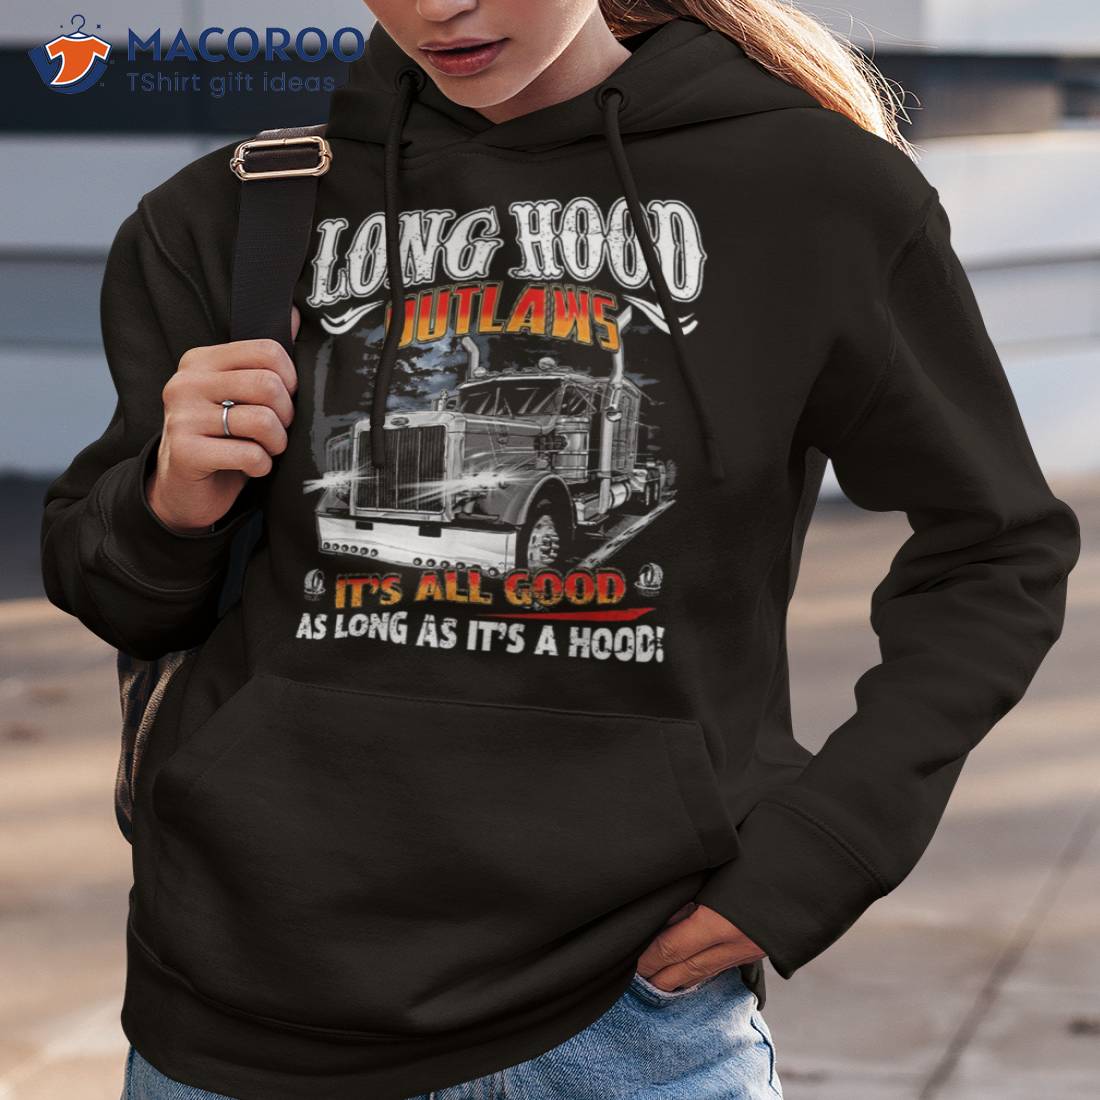 Long Hood Outlaws Trucker Truck Drivers Gifts Shirt